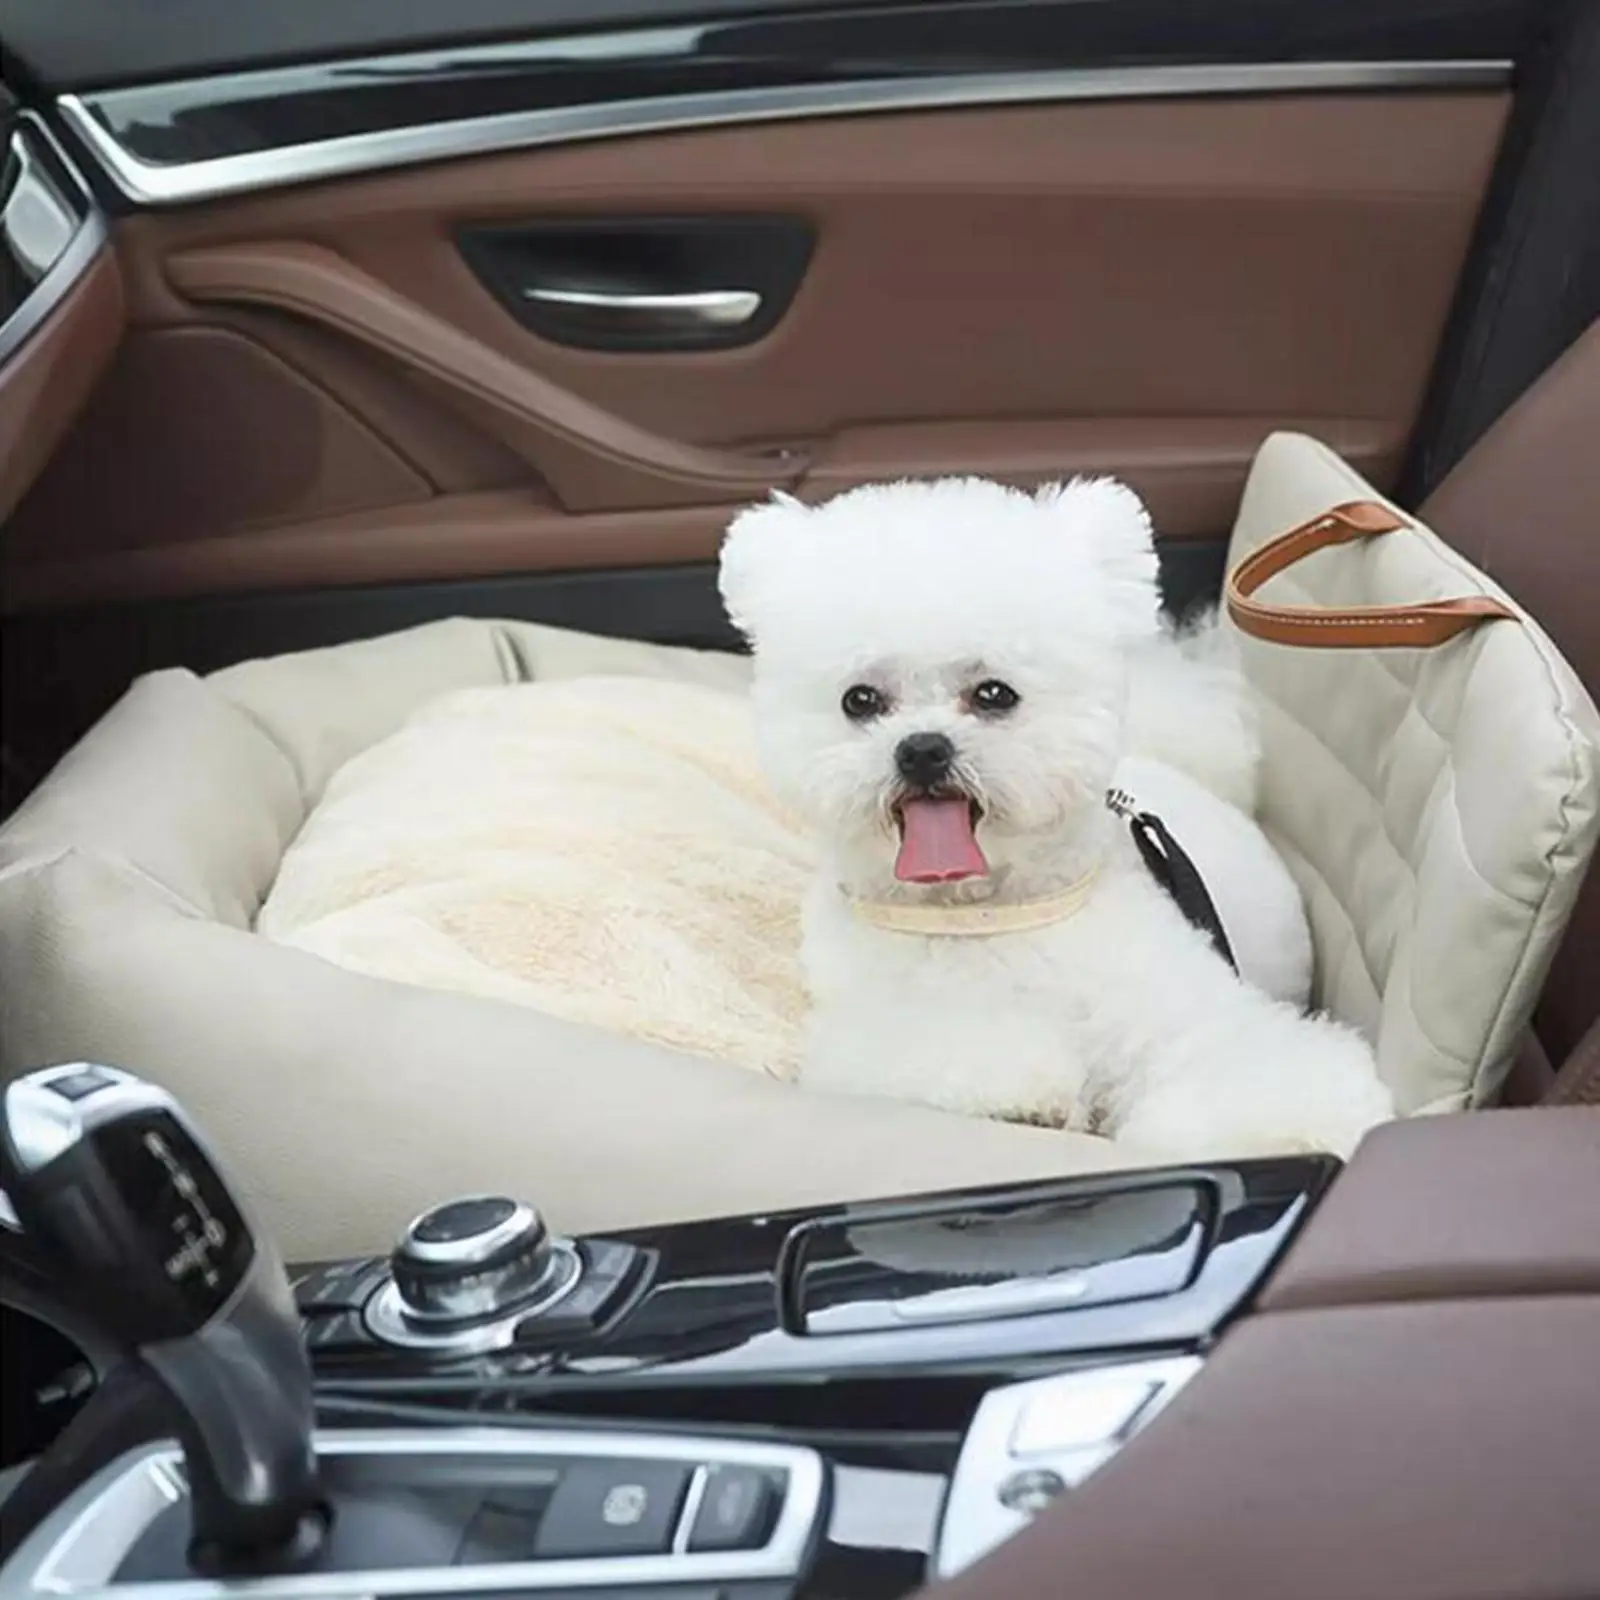 הכלב מושב מחמד שטח המושב הכלב מושב מכונית בינונית כלבים גור חתולים גדולים . ' - ' . 2